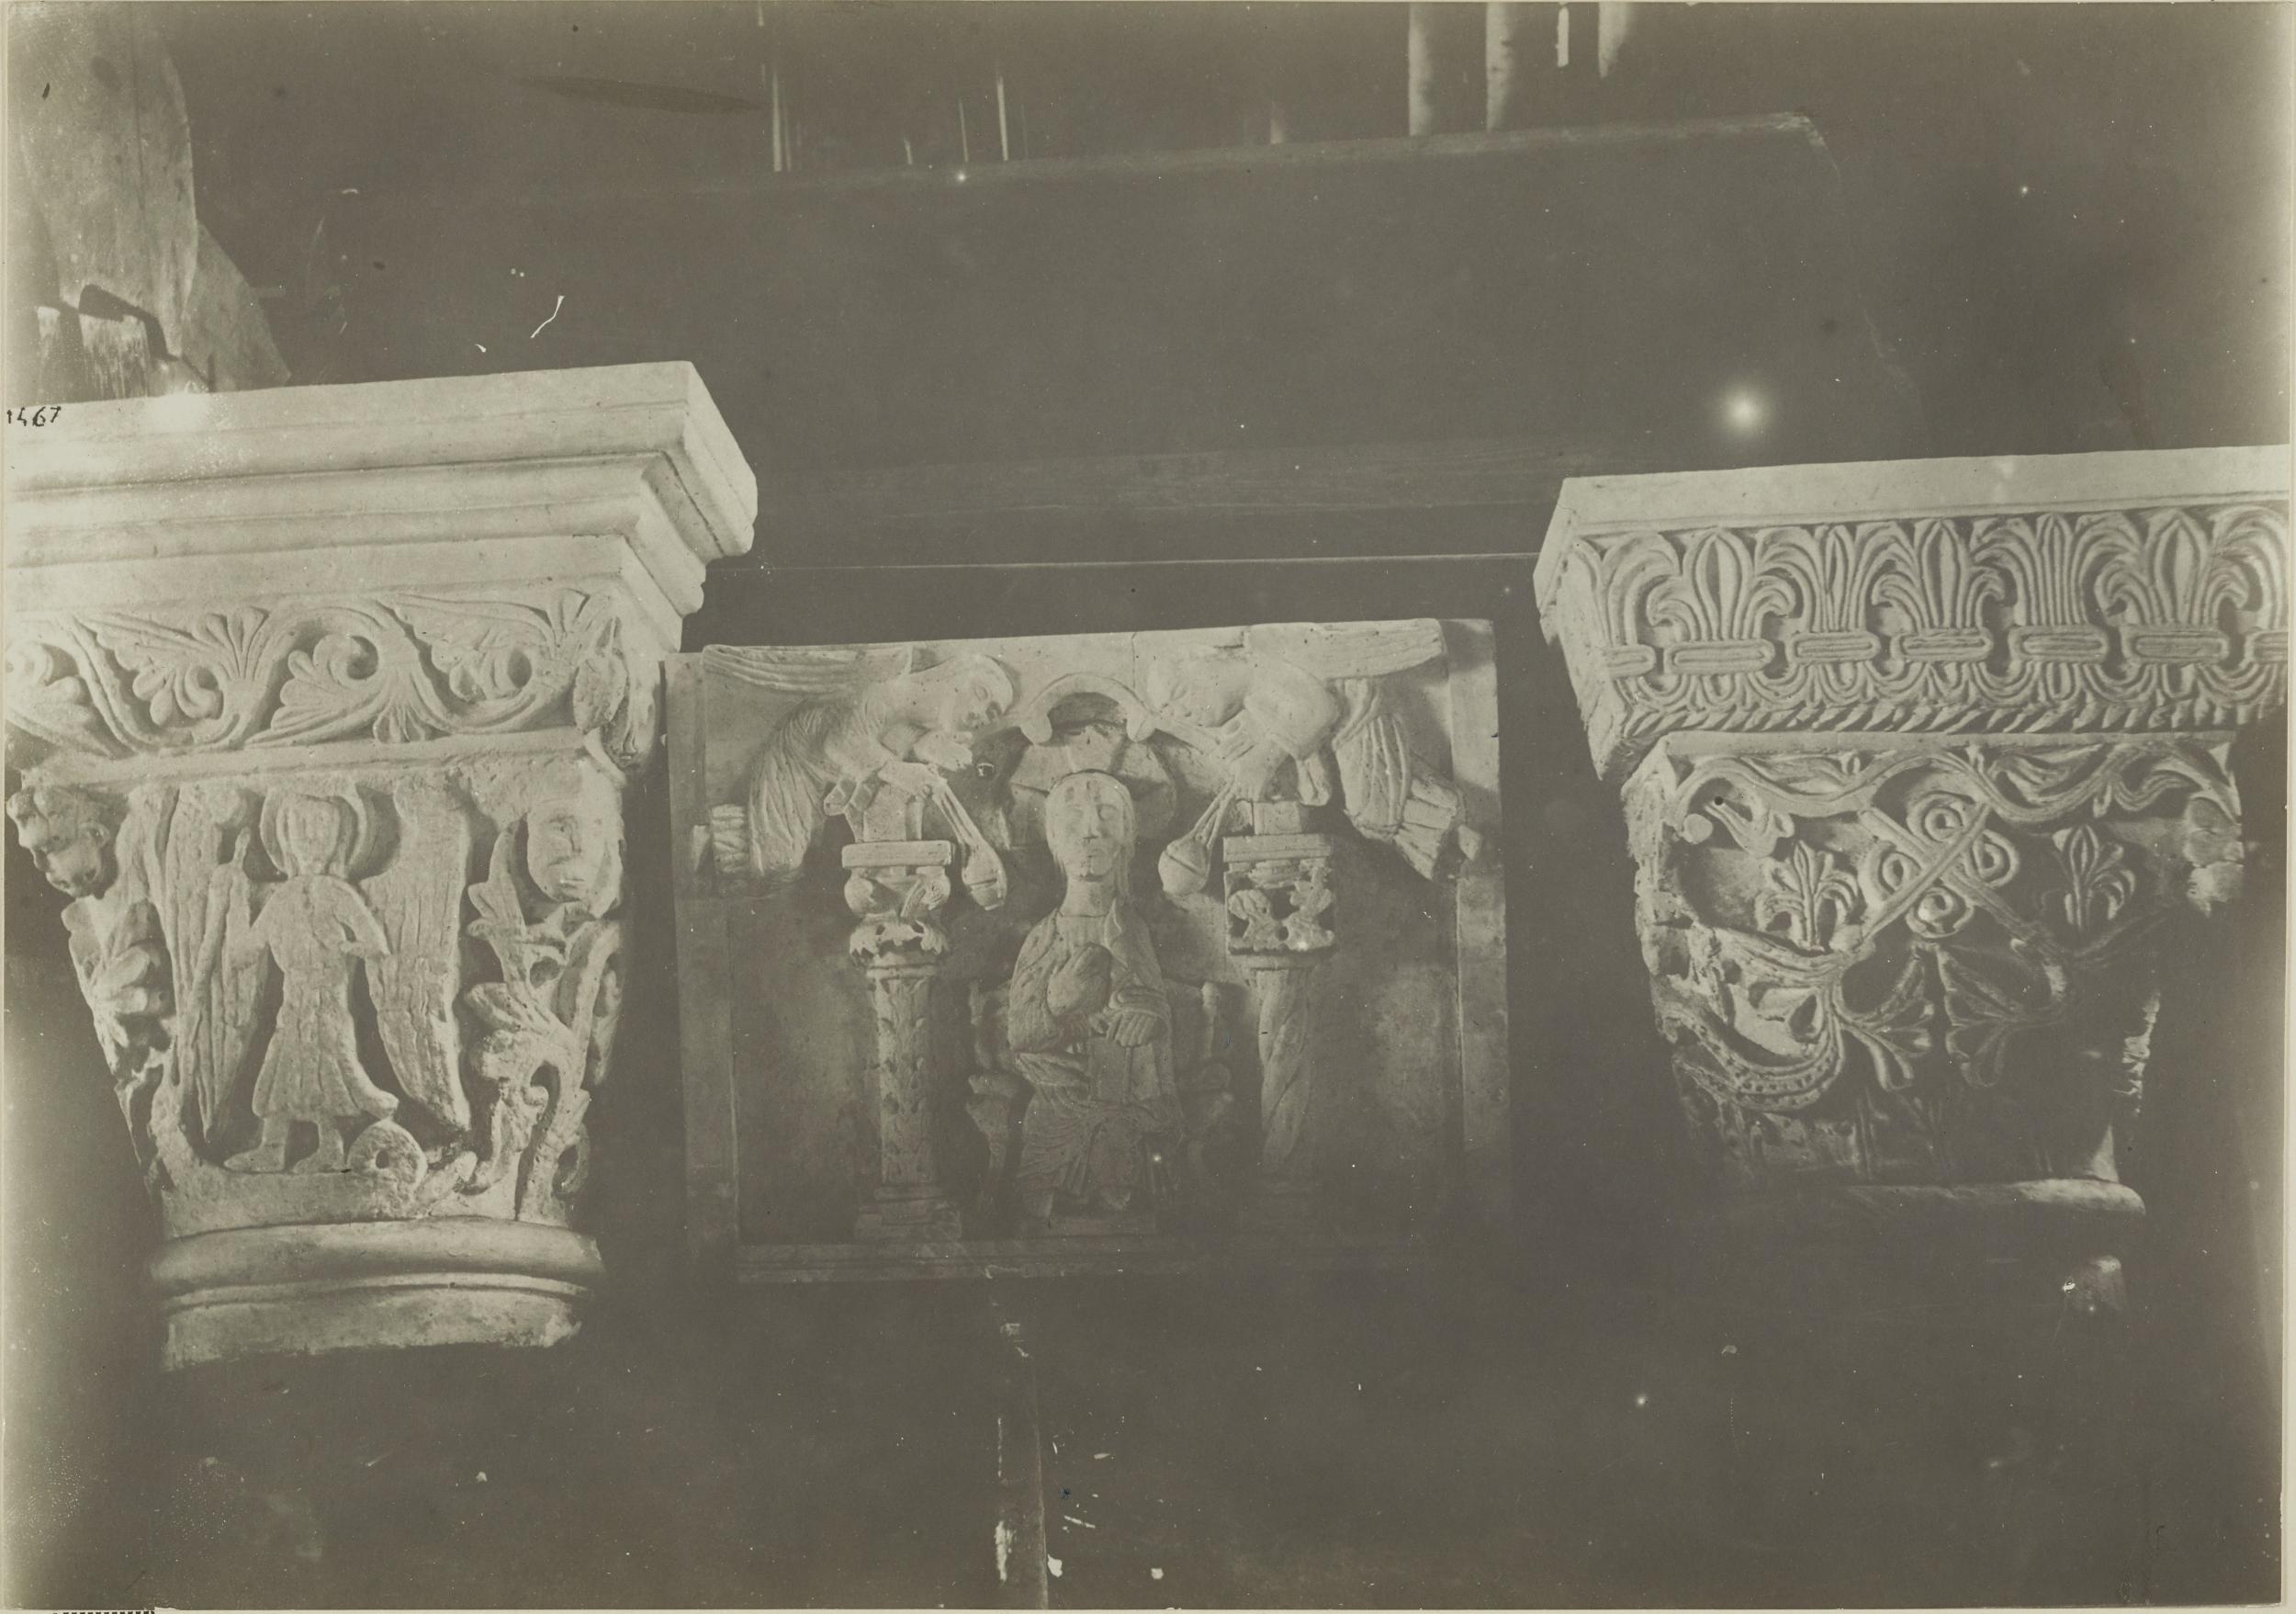 Fotografo non identificato, Bari - Castello, gipsoteca, calchi di capitelli, 1923 post, gelatina ai sali d'argento/carta, MPI325327